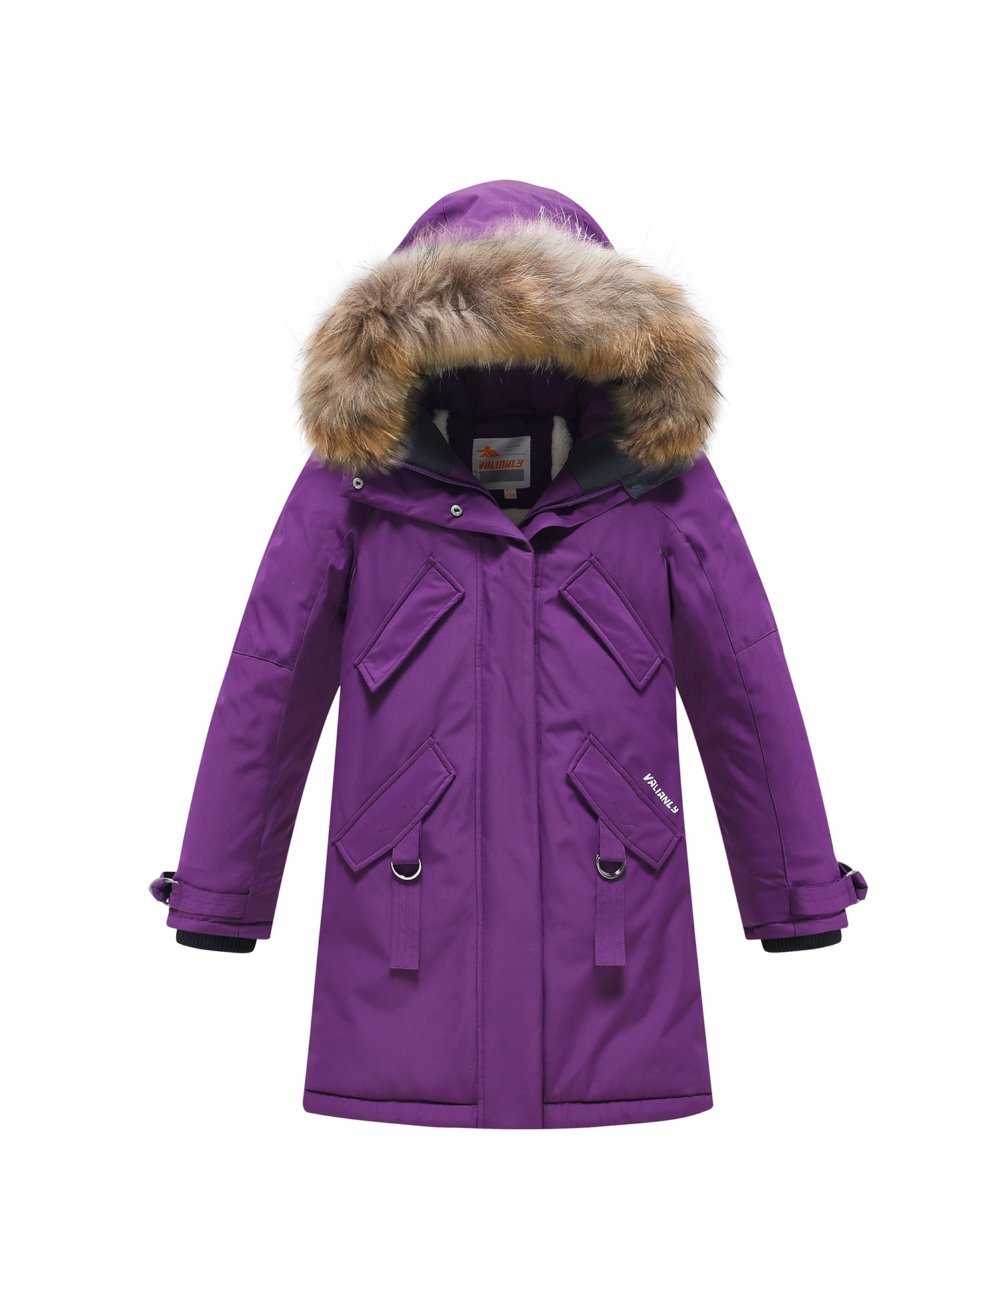 Купить оптом Парка зимняя подростковая для девочки фиолетового цвета 9340F в Казани